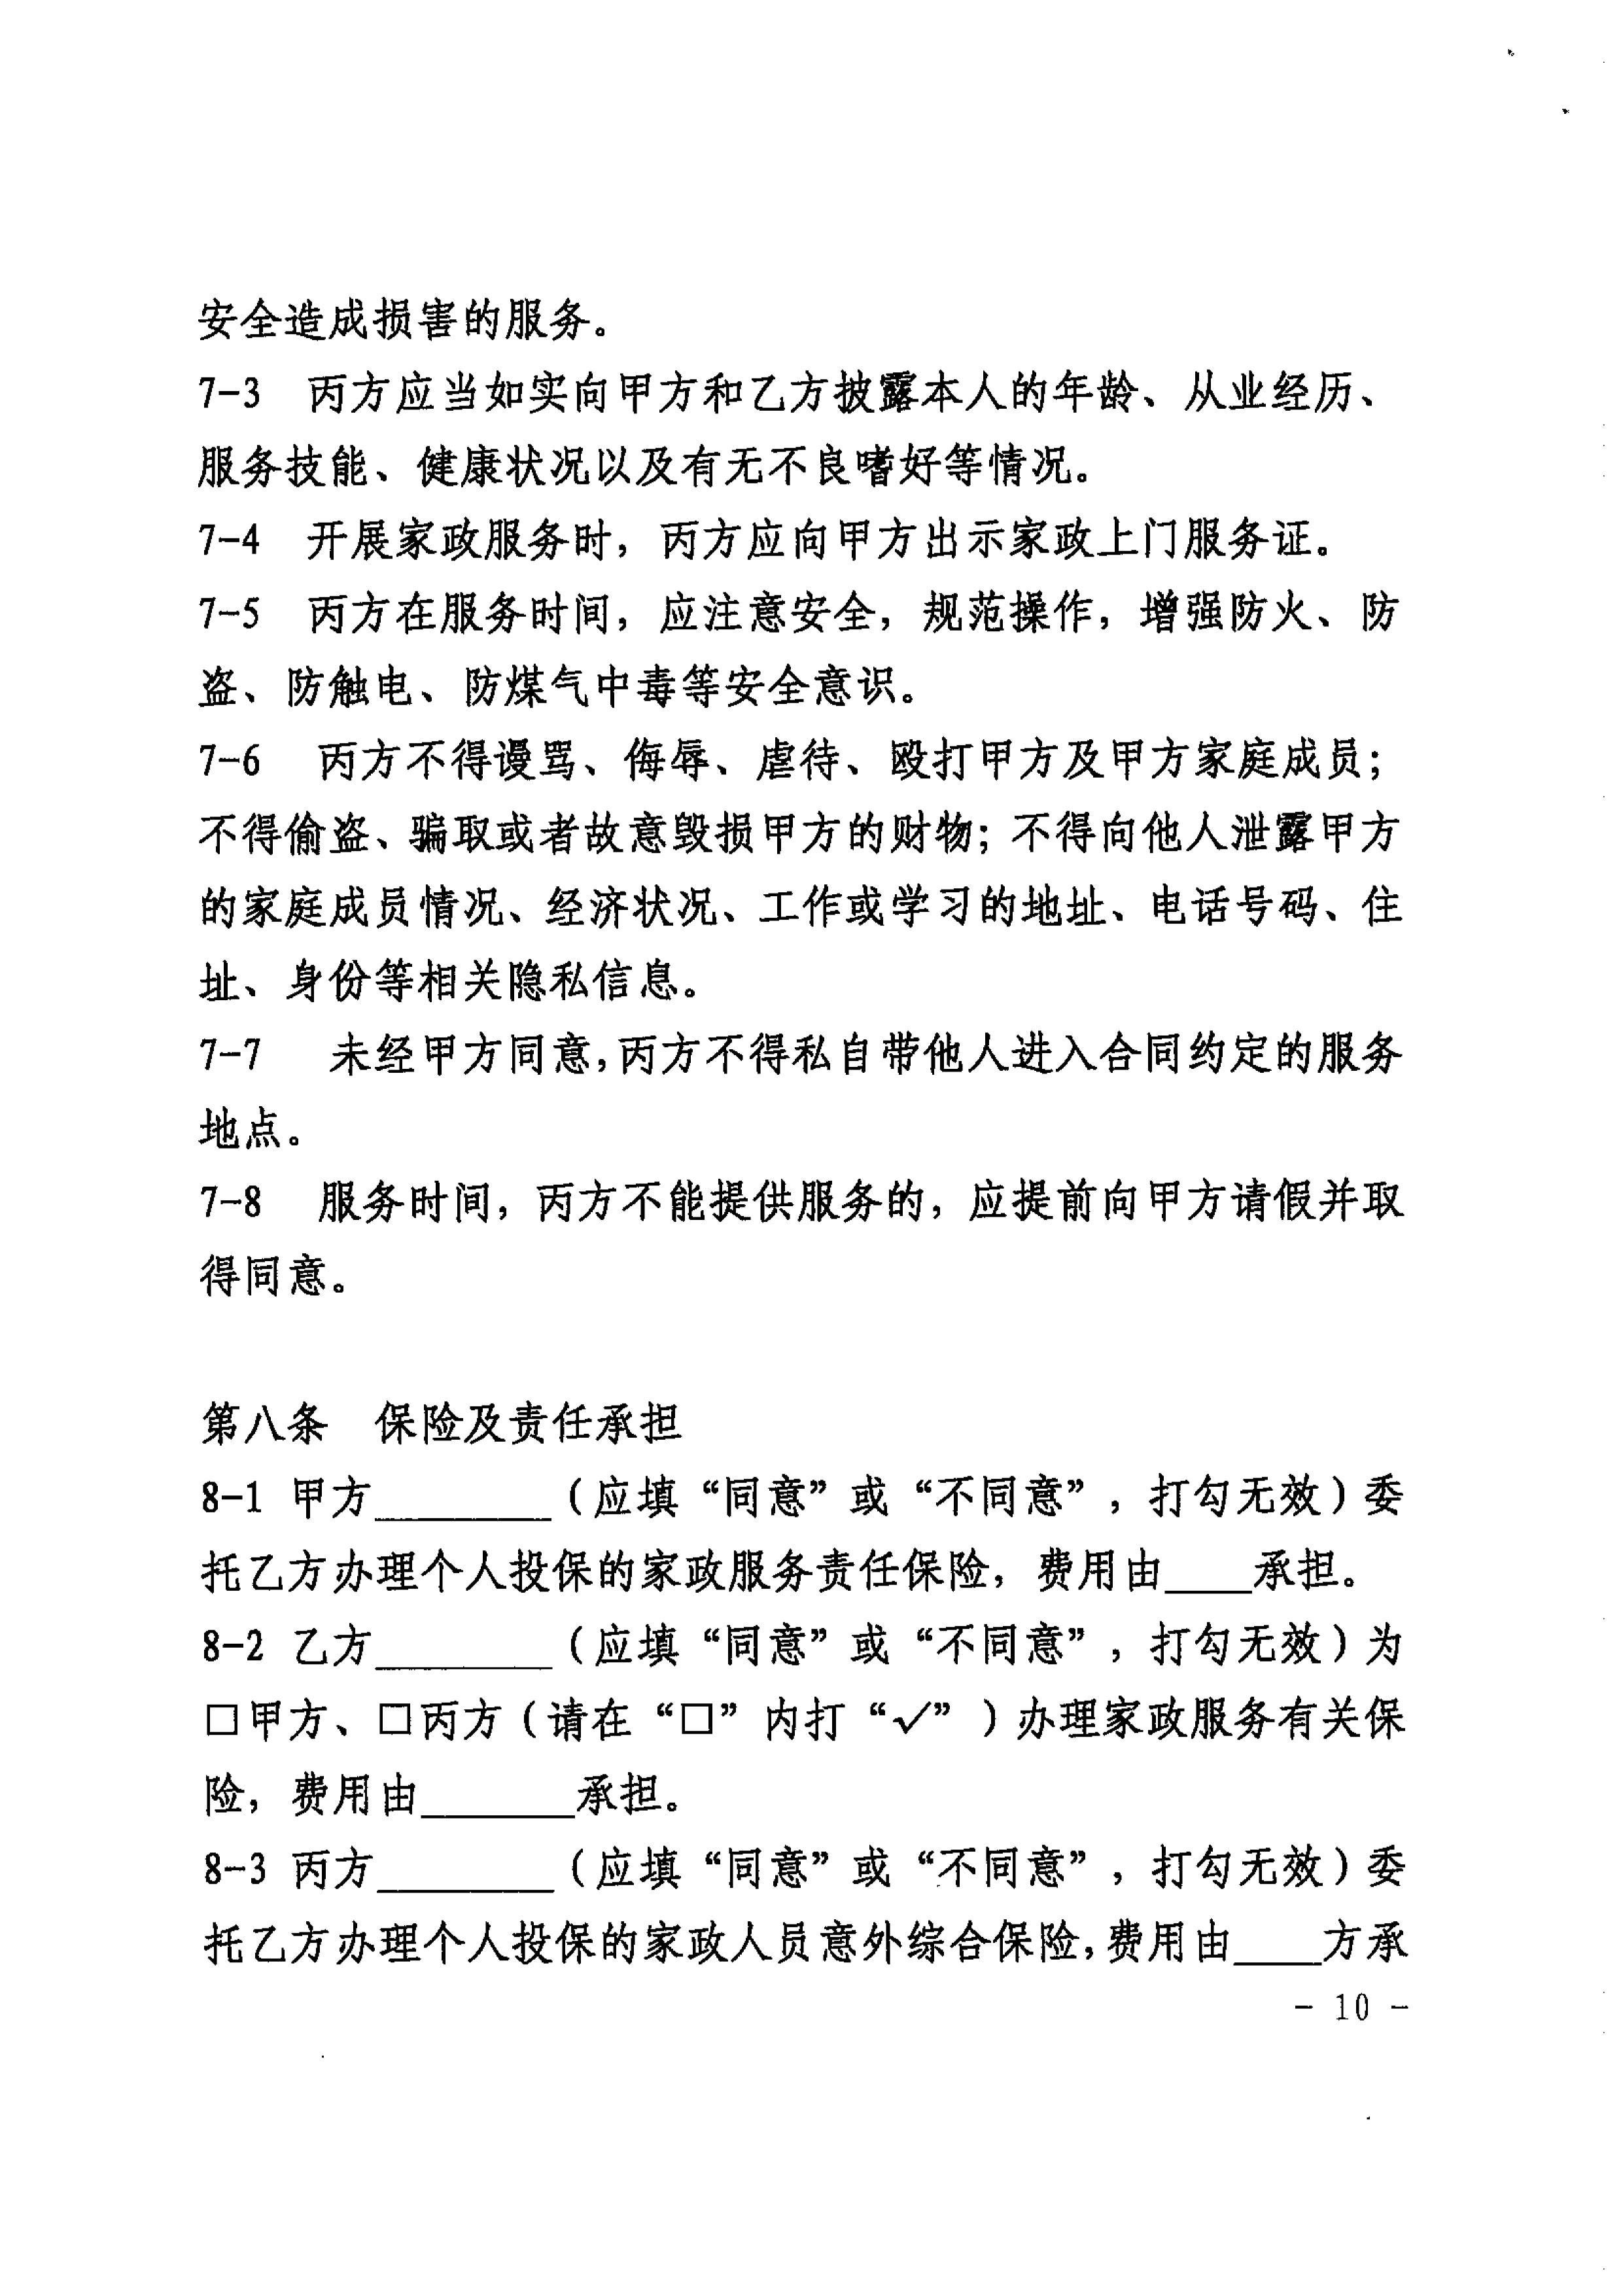 关于推广使用《上海市家政服务合同示范文本》的通知_10